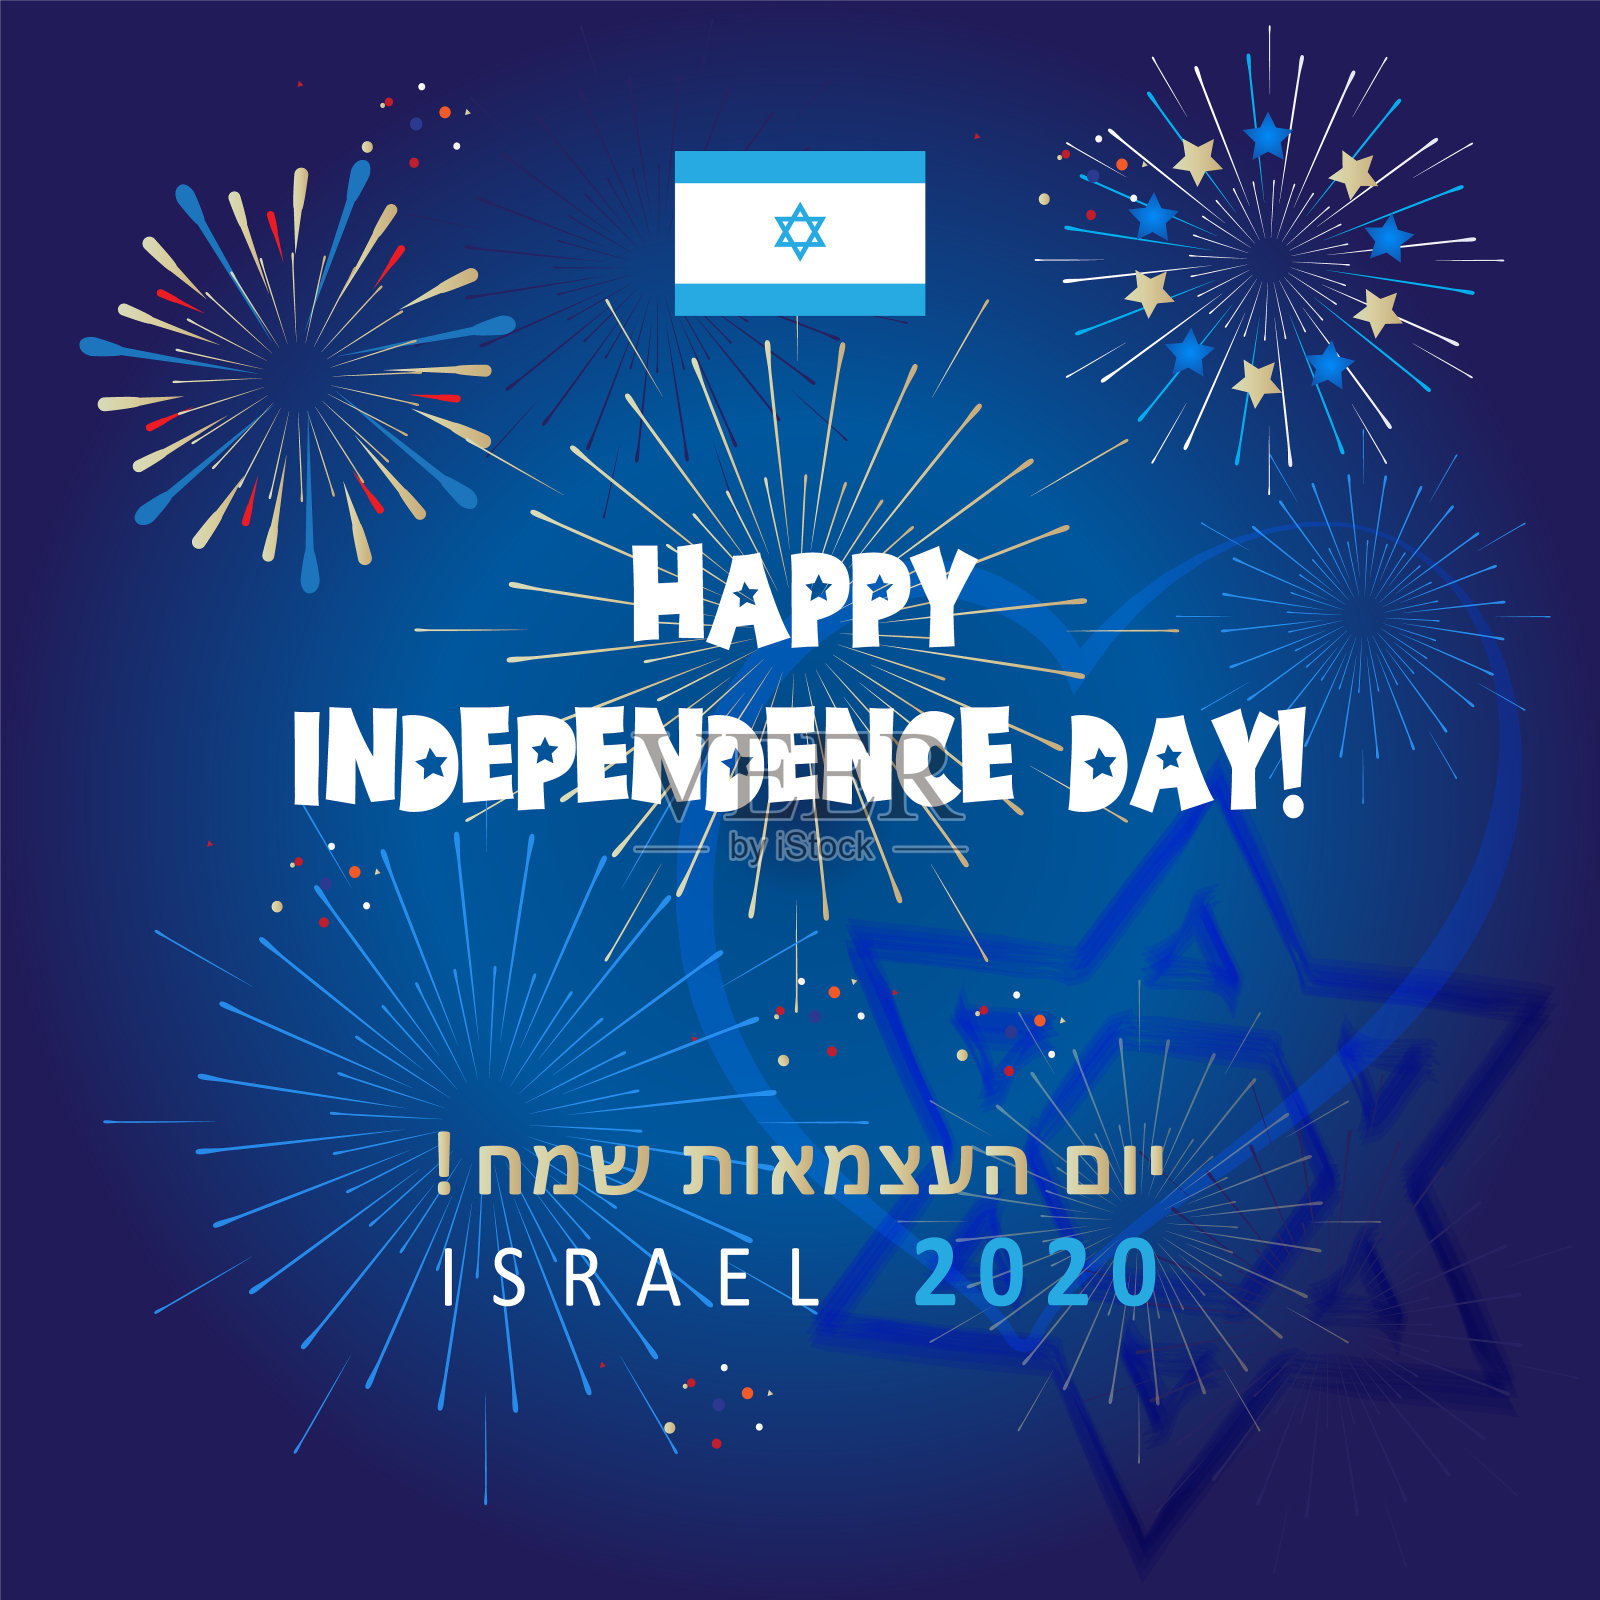 独立日快乐!以色列2020烟花节特拉维夫邀请卡，以色列国旗蓝和白色，大卫之星，壁纸矢量模板插画图片素材